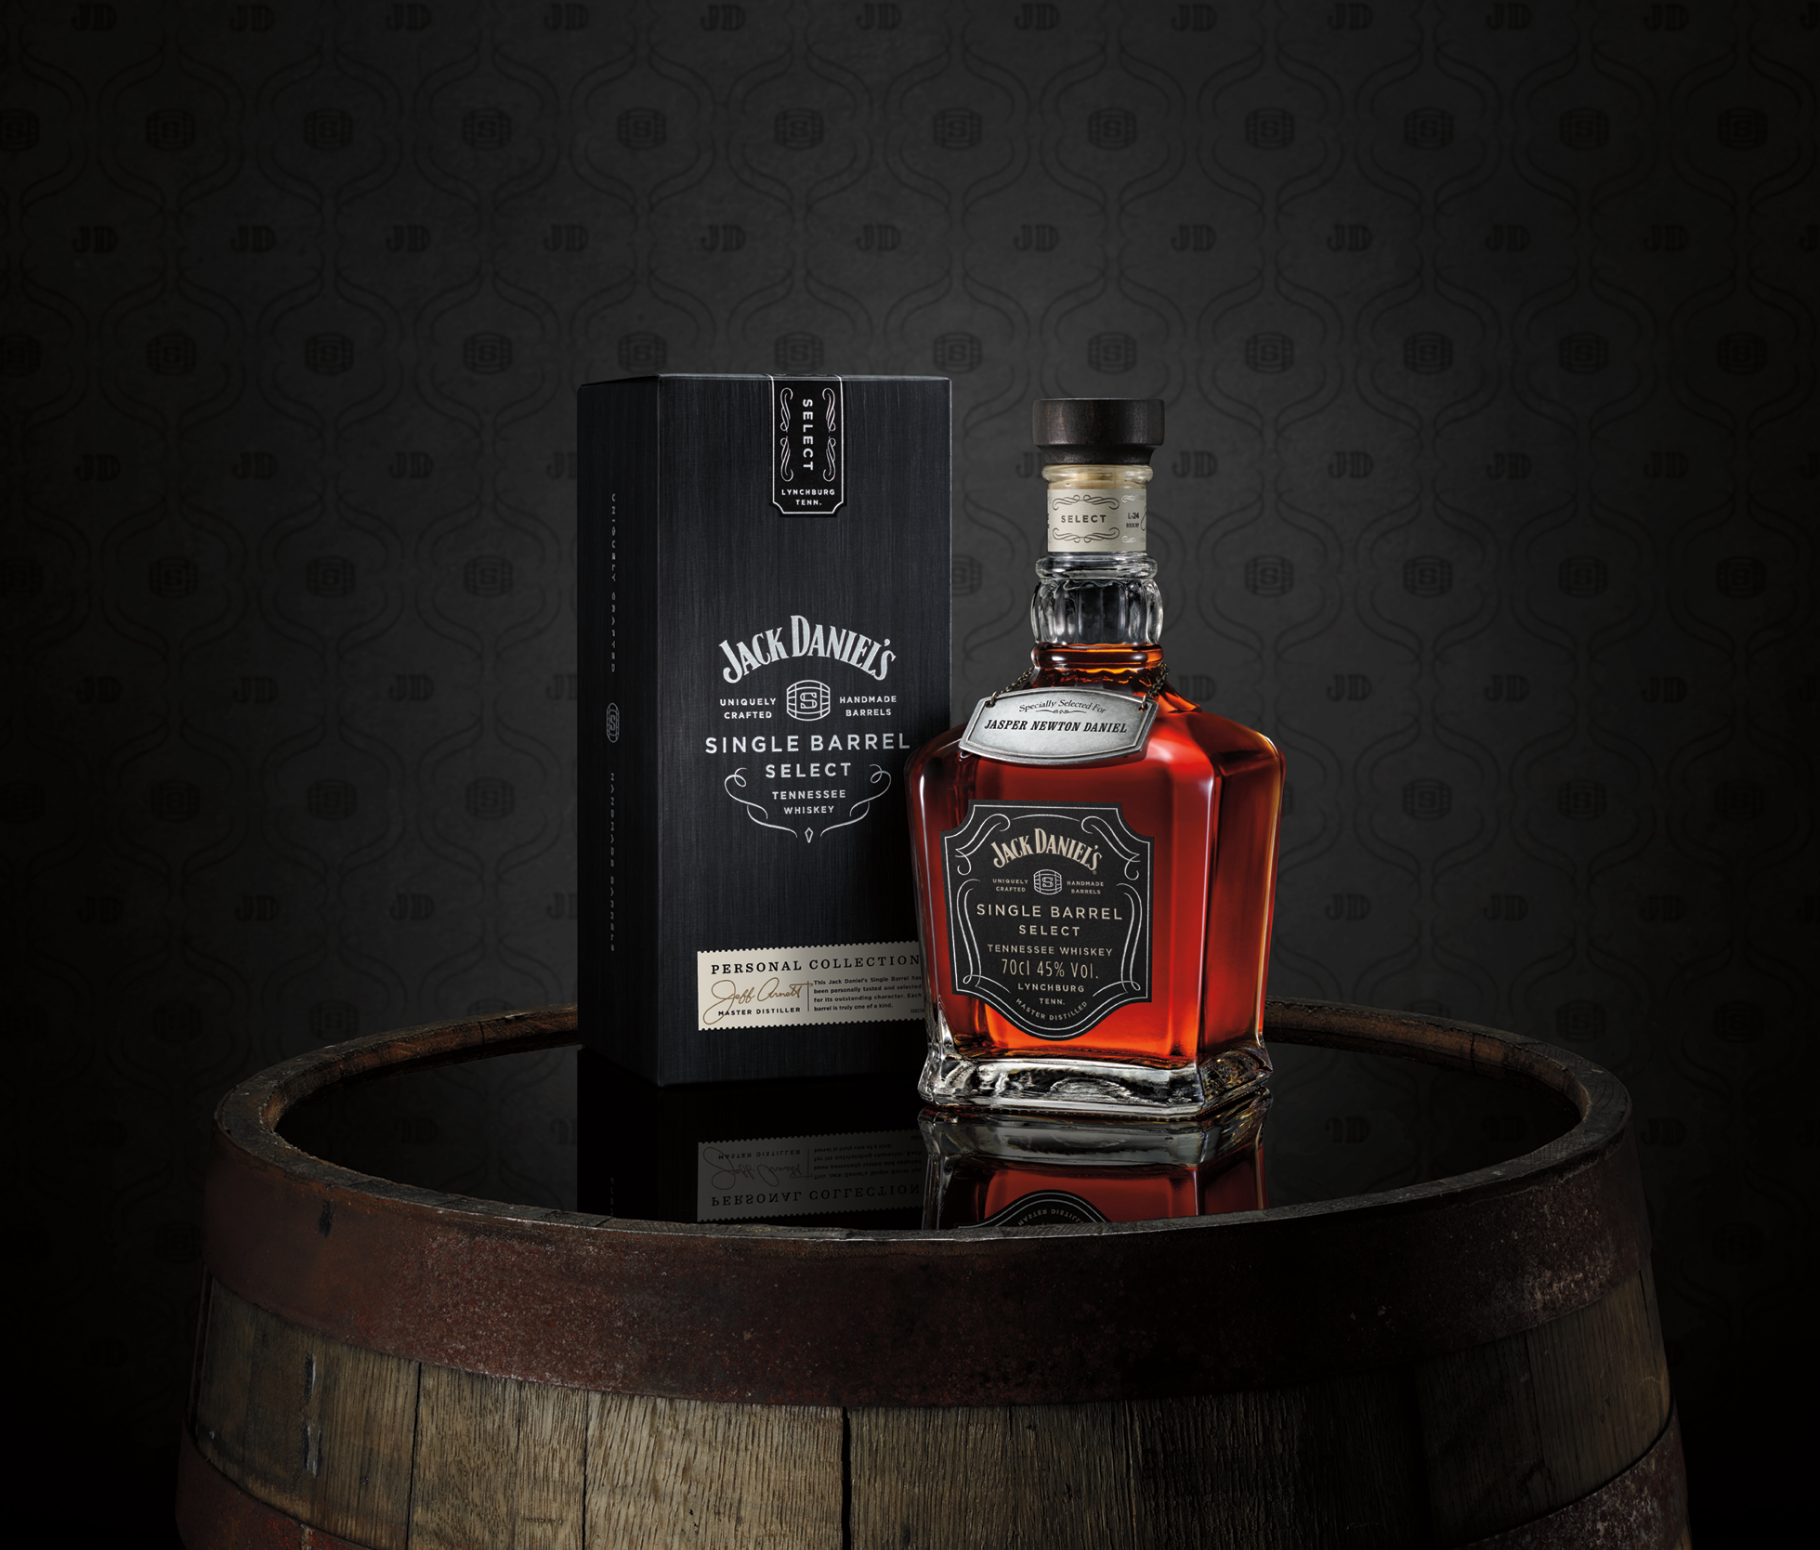 A bottle of Jack Daniel's Single Barrel Select beside its packaging.